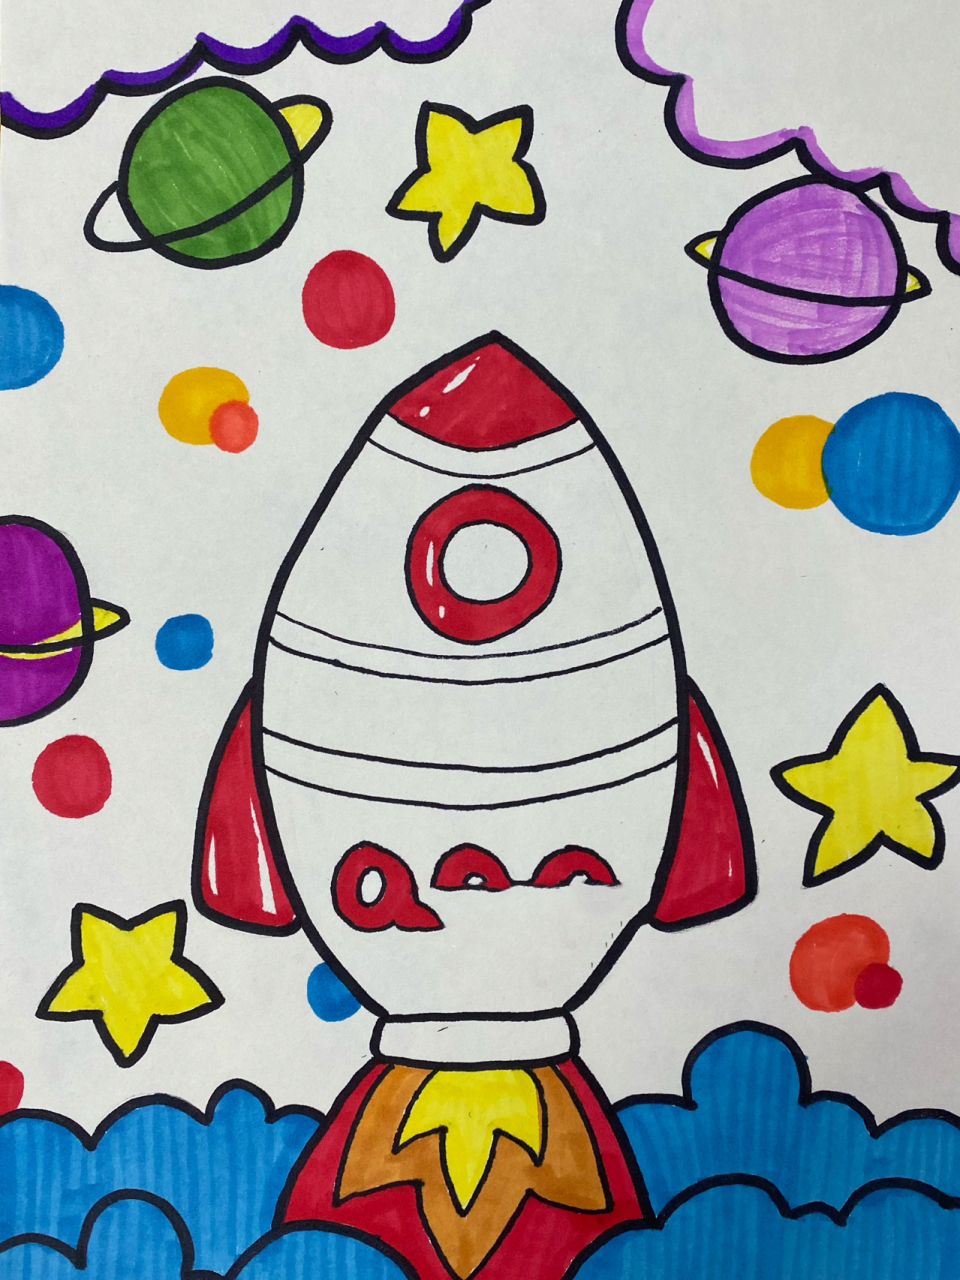 今天的绘画课程里,我们要以太空飞船为主题进行绘画